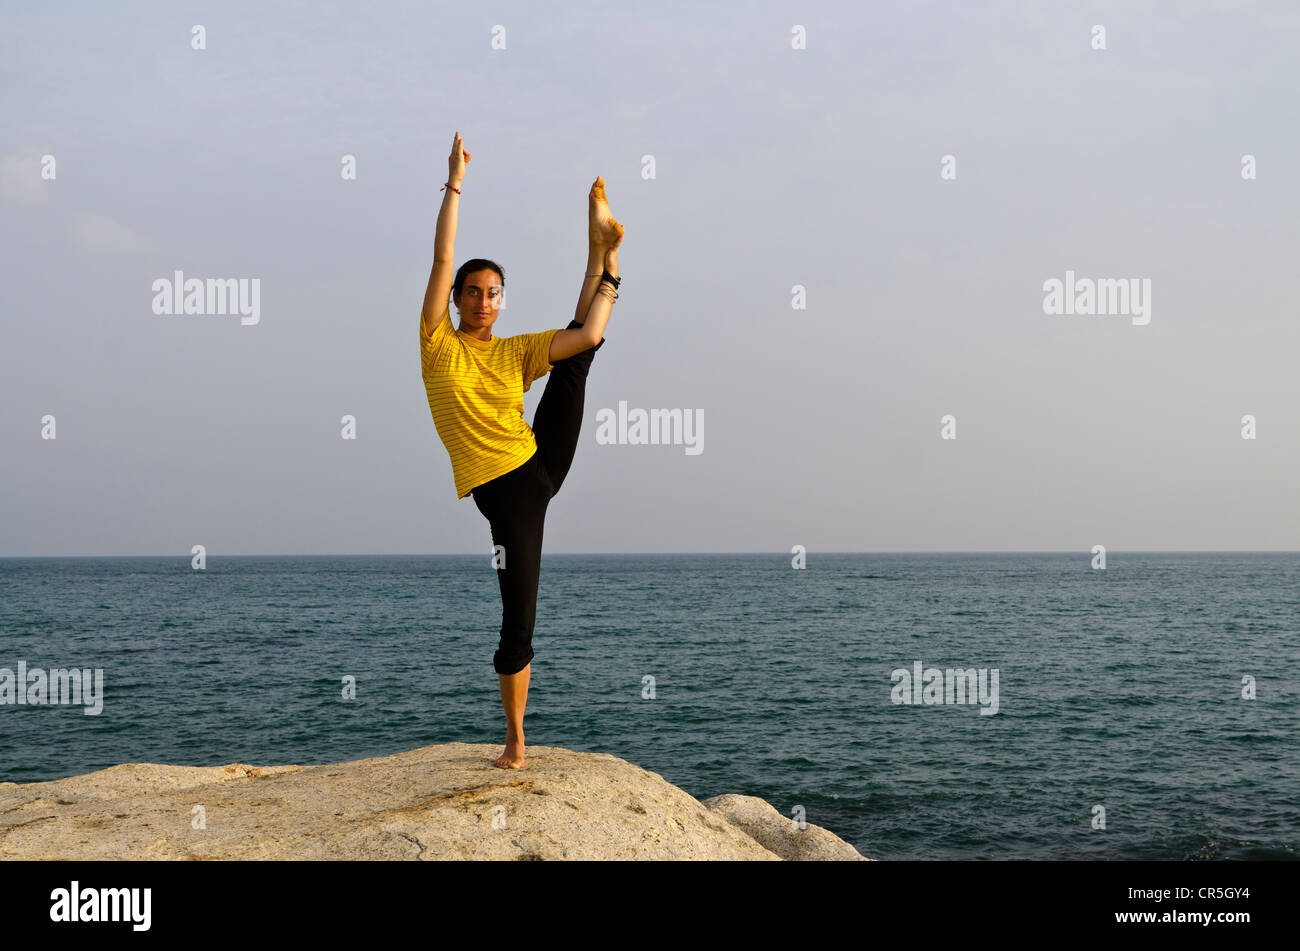 தொப்பையைக் குறைக்க உதவும் யோகாசனங்கள்! | International Yoga Day 2022: Yoga  Poses To Reduce Belly Fat - Tamil BoldSky